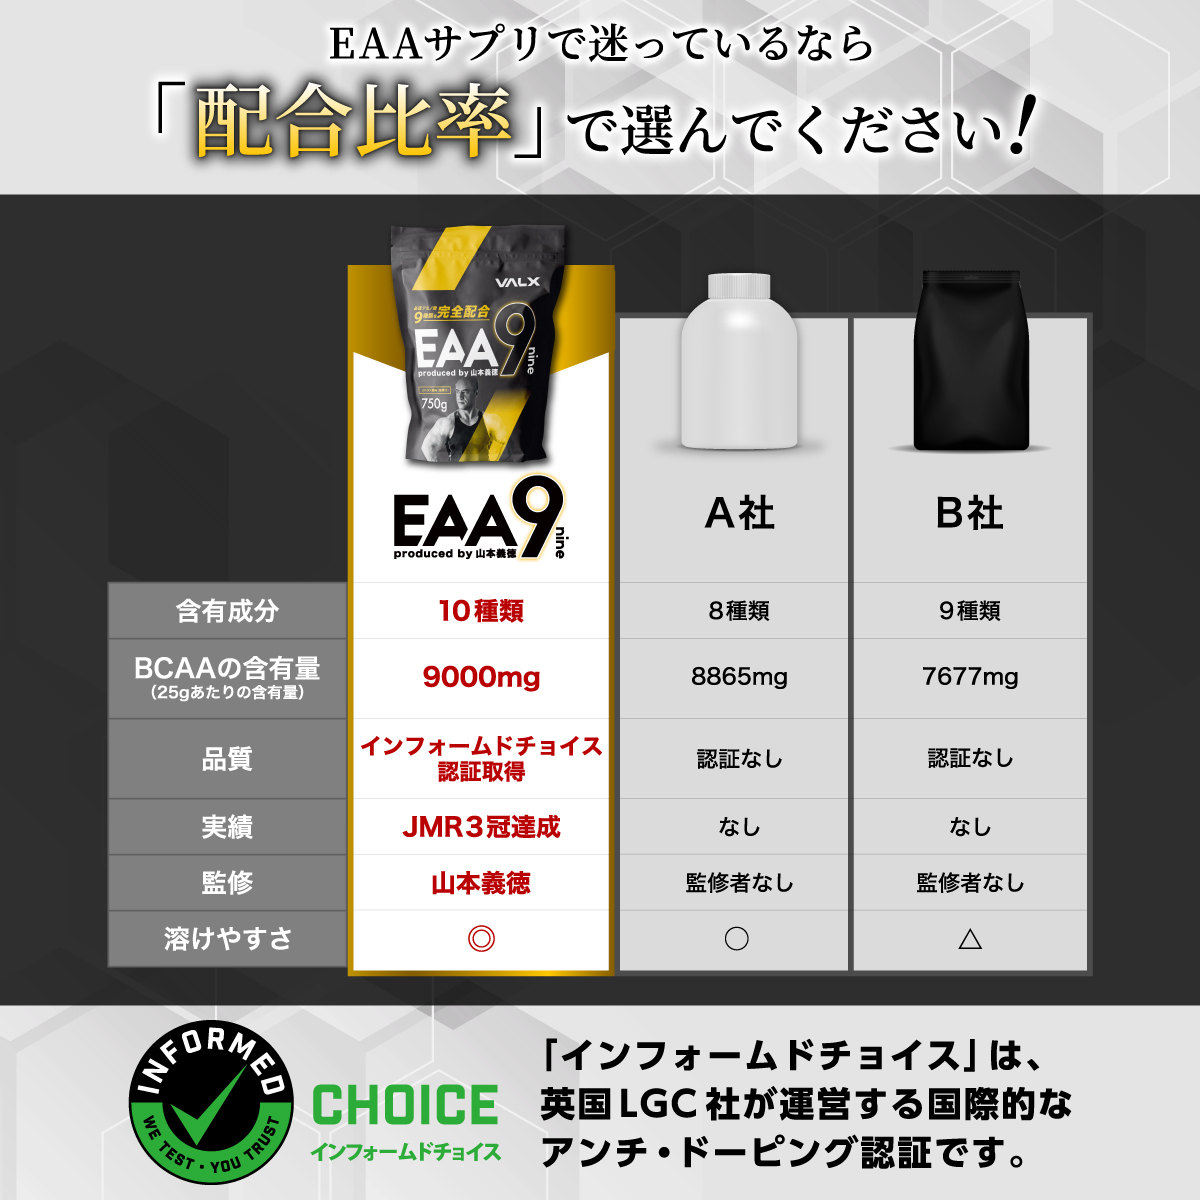 【楽天市場】EAA 山本義徳 EAA9 VALX バルクス 750g ベータアラニン 国産 サプリメント シトラス風味 コーラ風味